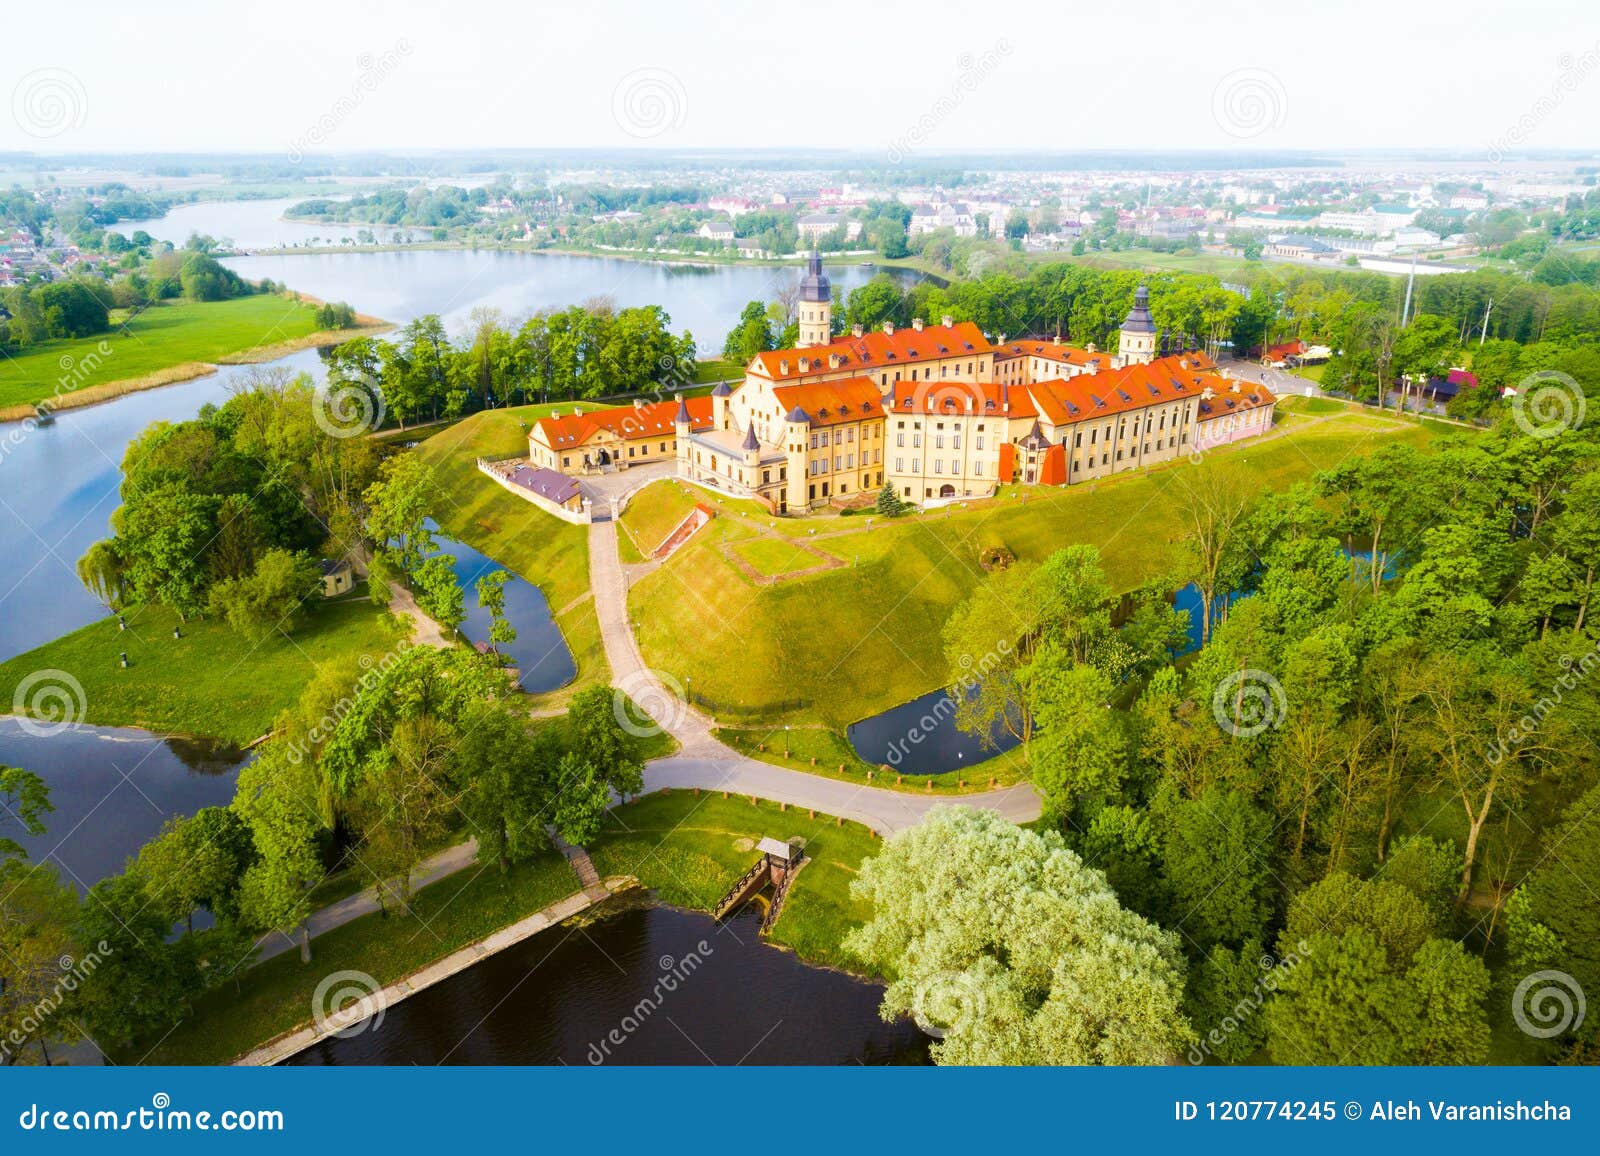 castle in nesvizh, minsk region, belarus.